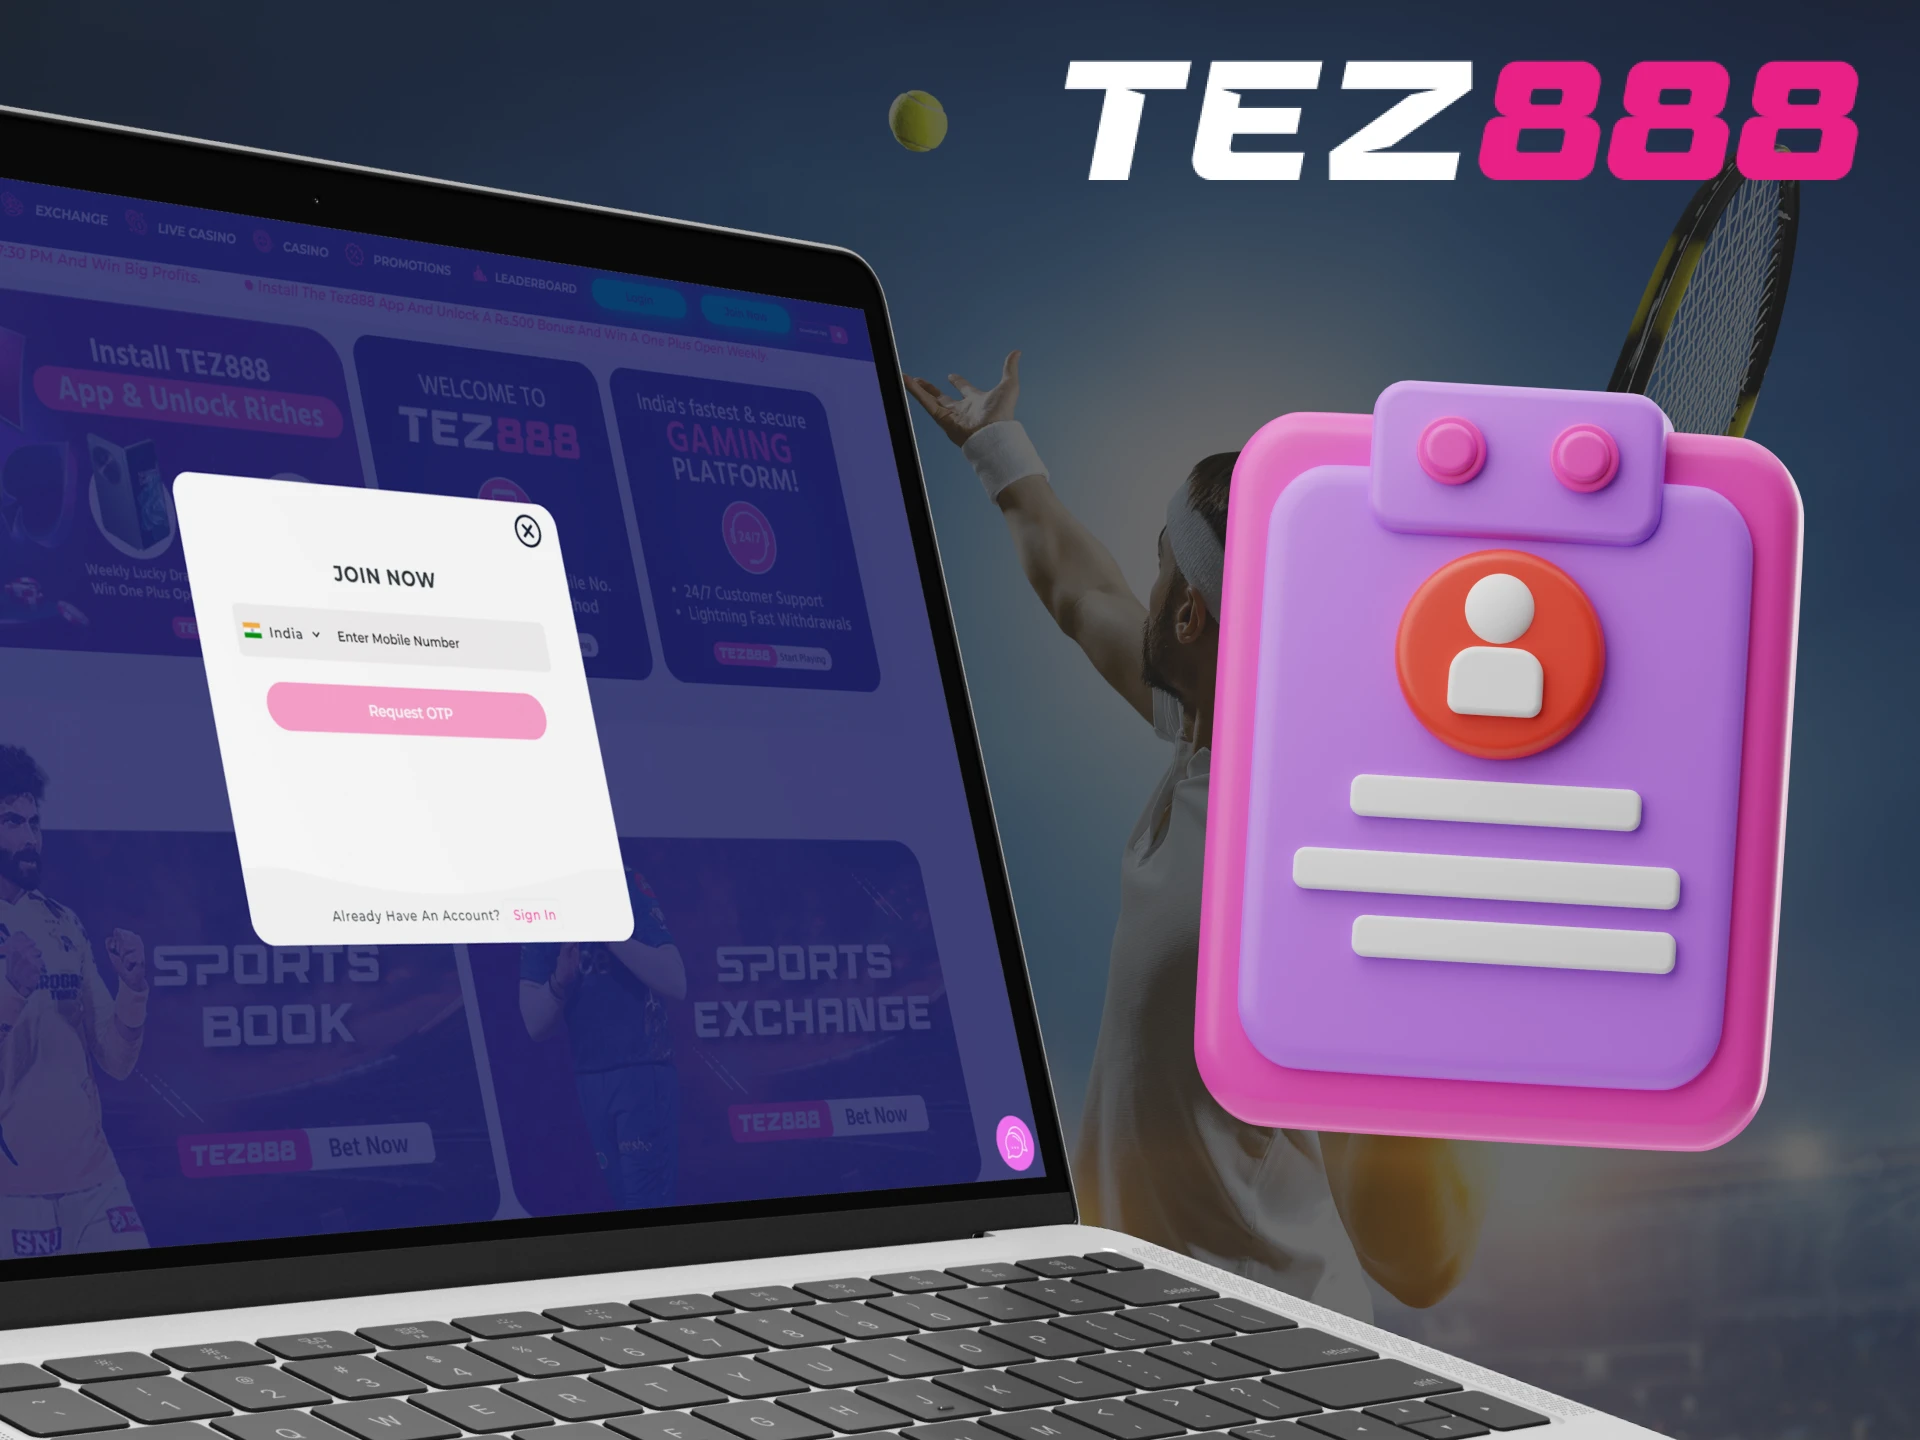 Tez888 has a simple registration process.